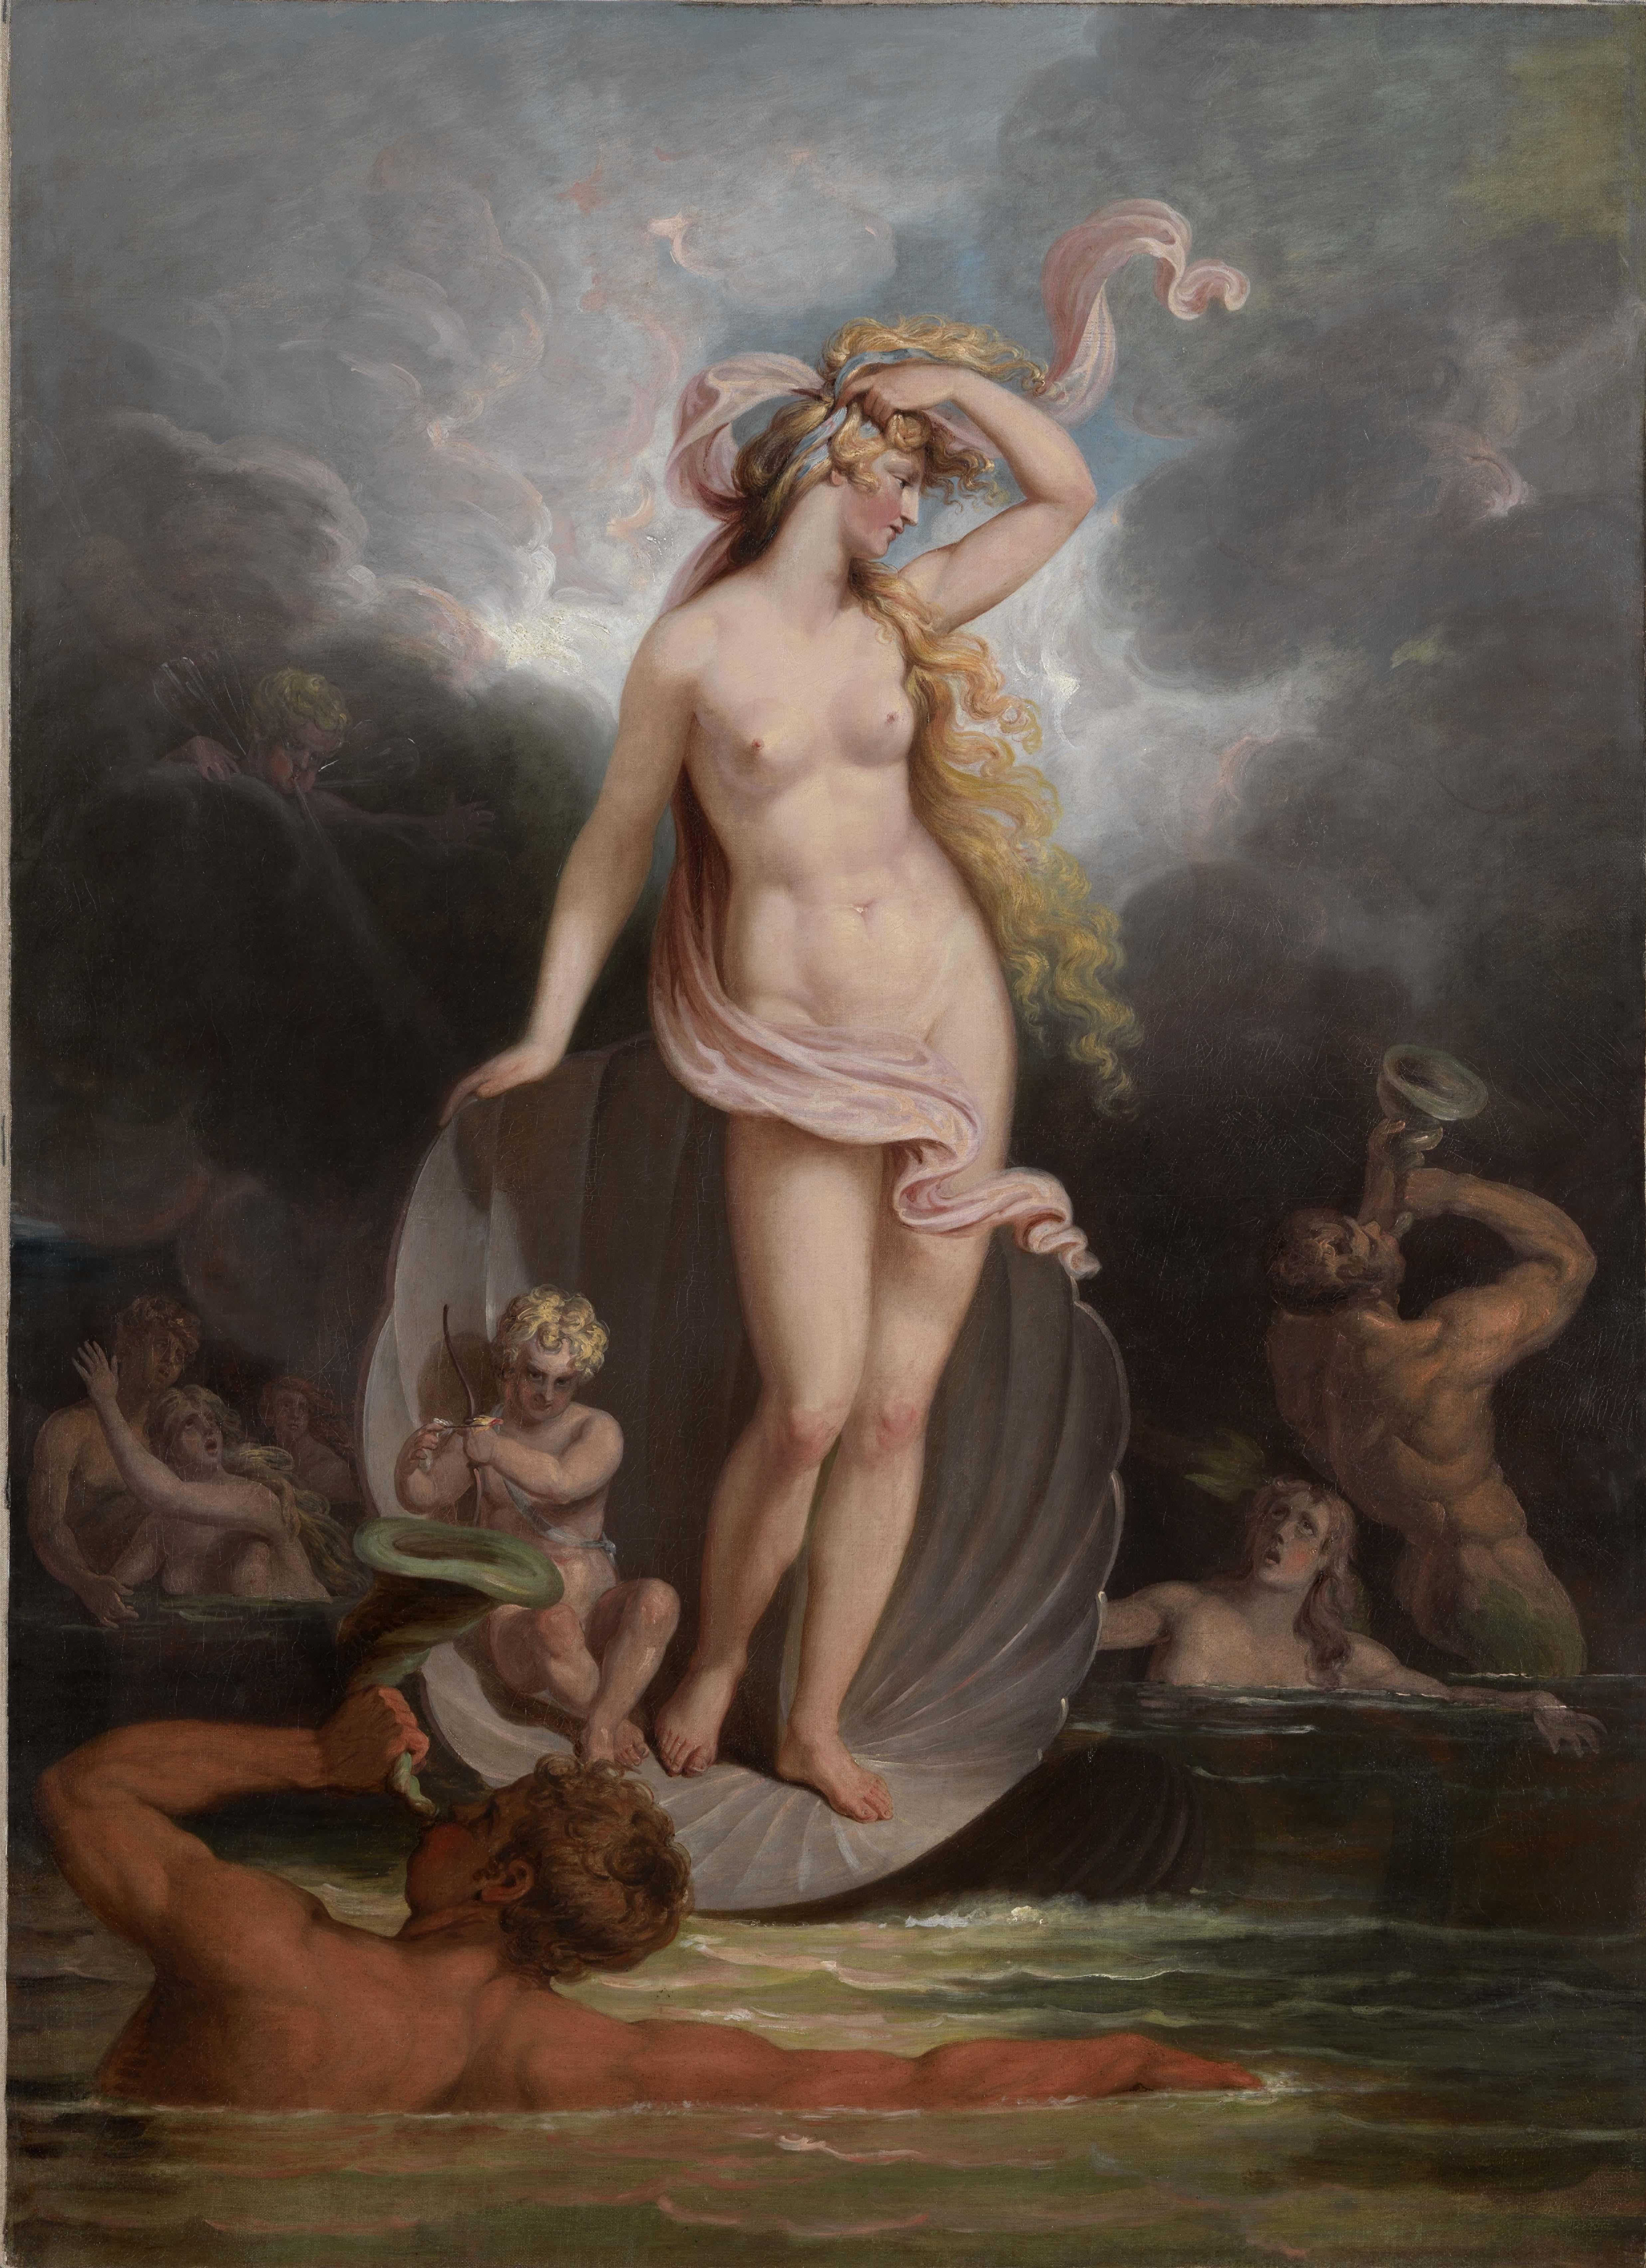 Peinture allégorique du XVIIIe siècle représentant le triomphe de la beauté - Painting de Edward Dayes